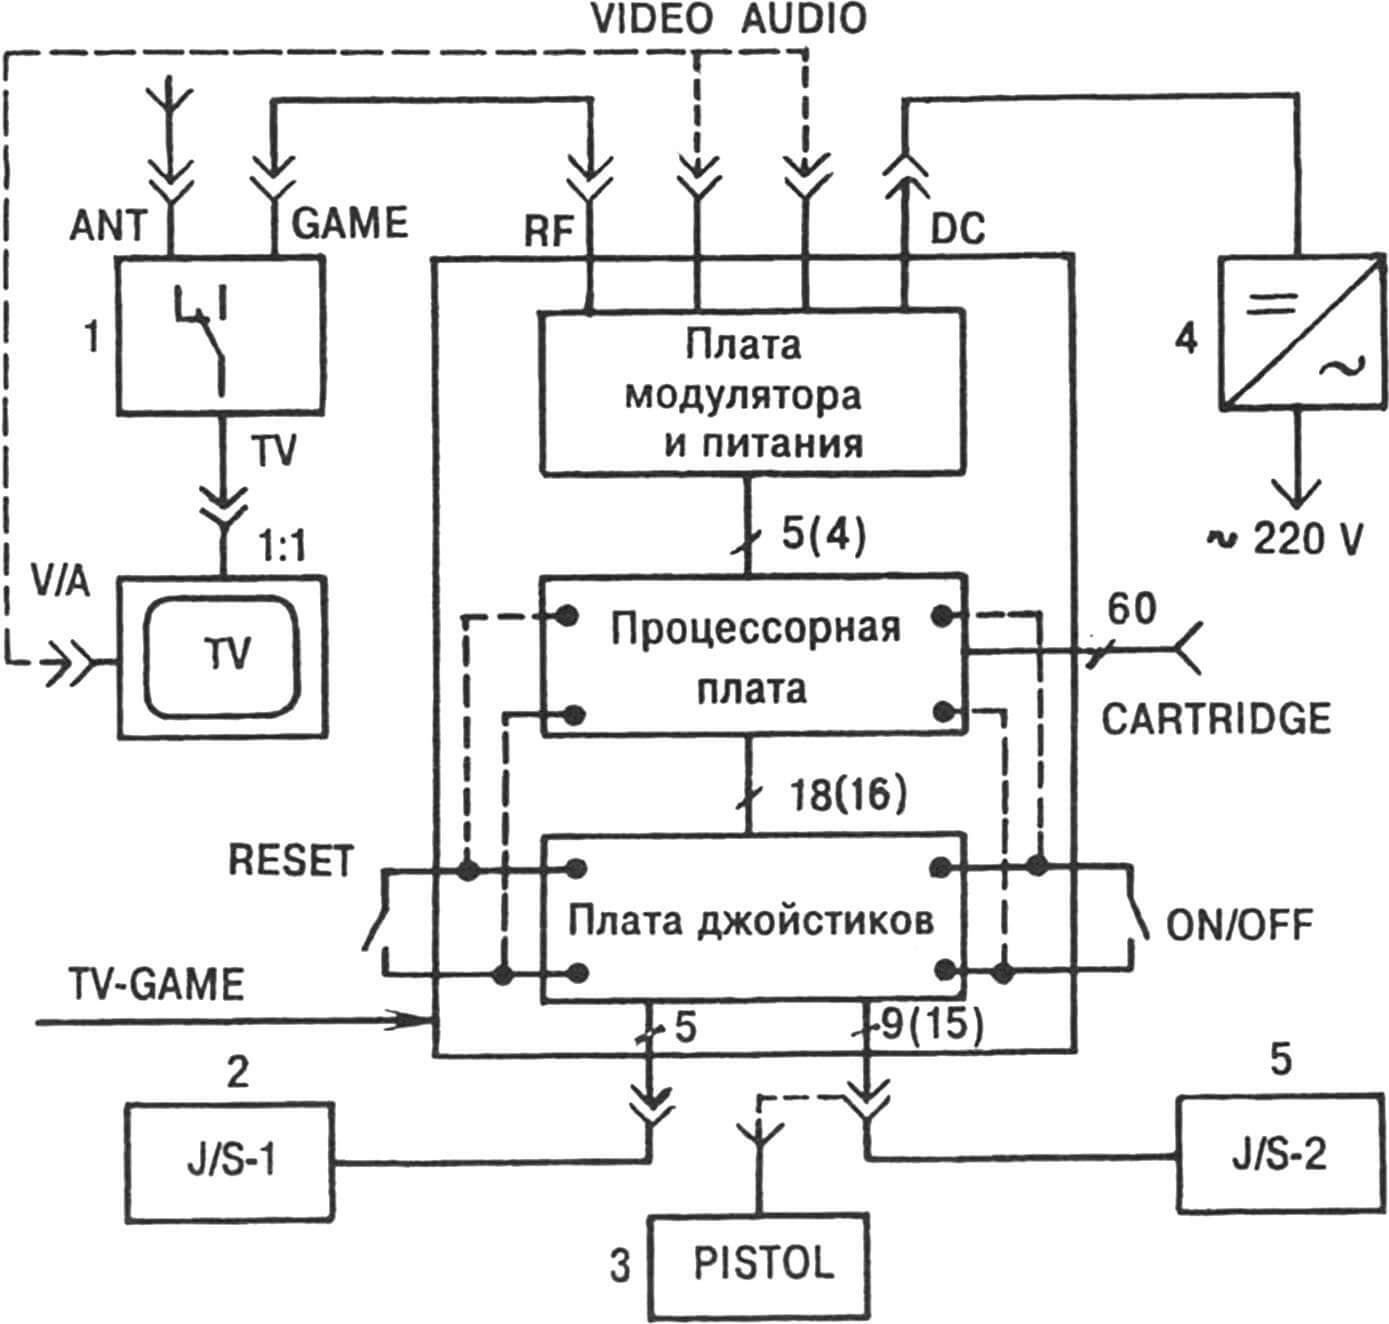 Рис. 1. Типовая структура 8-битной игровой видеоприставки.